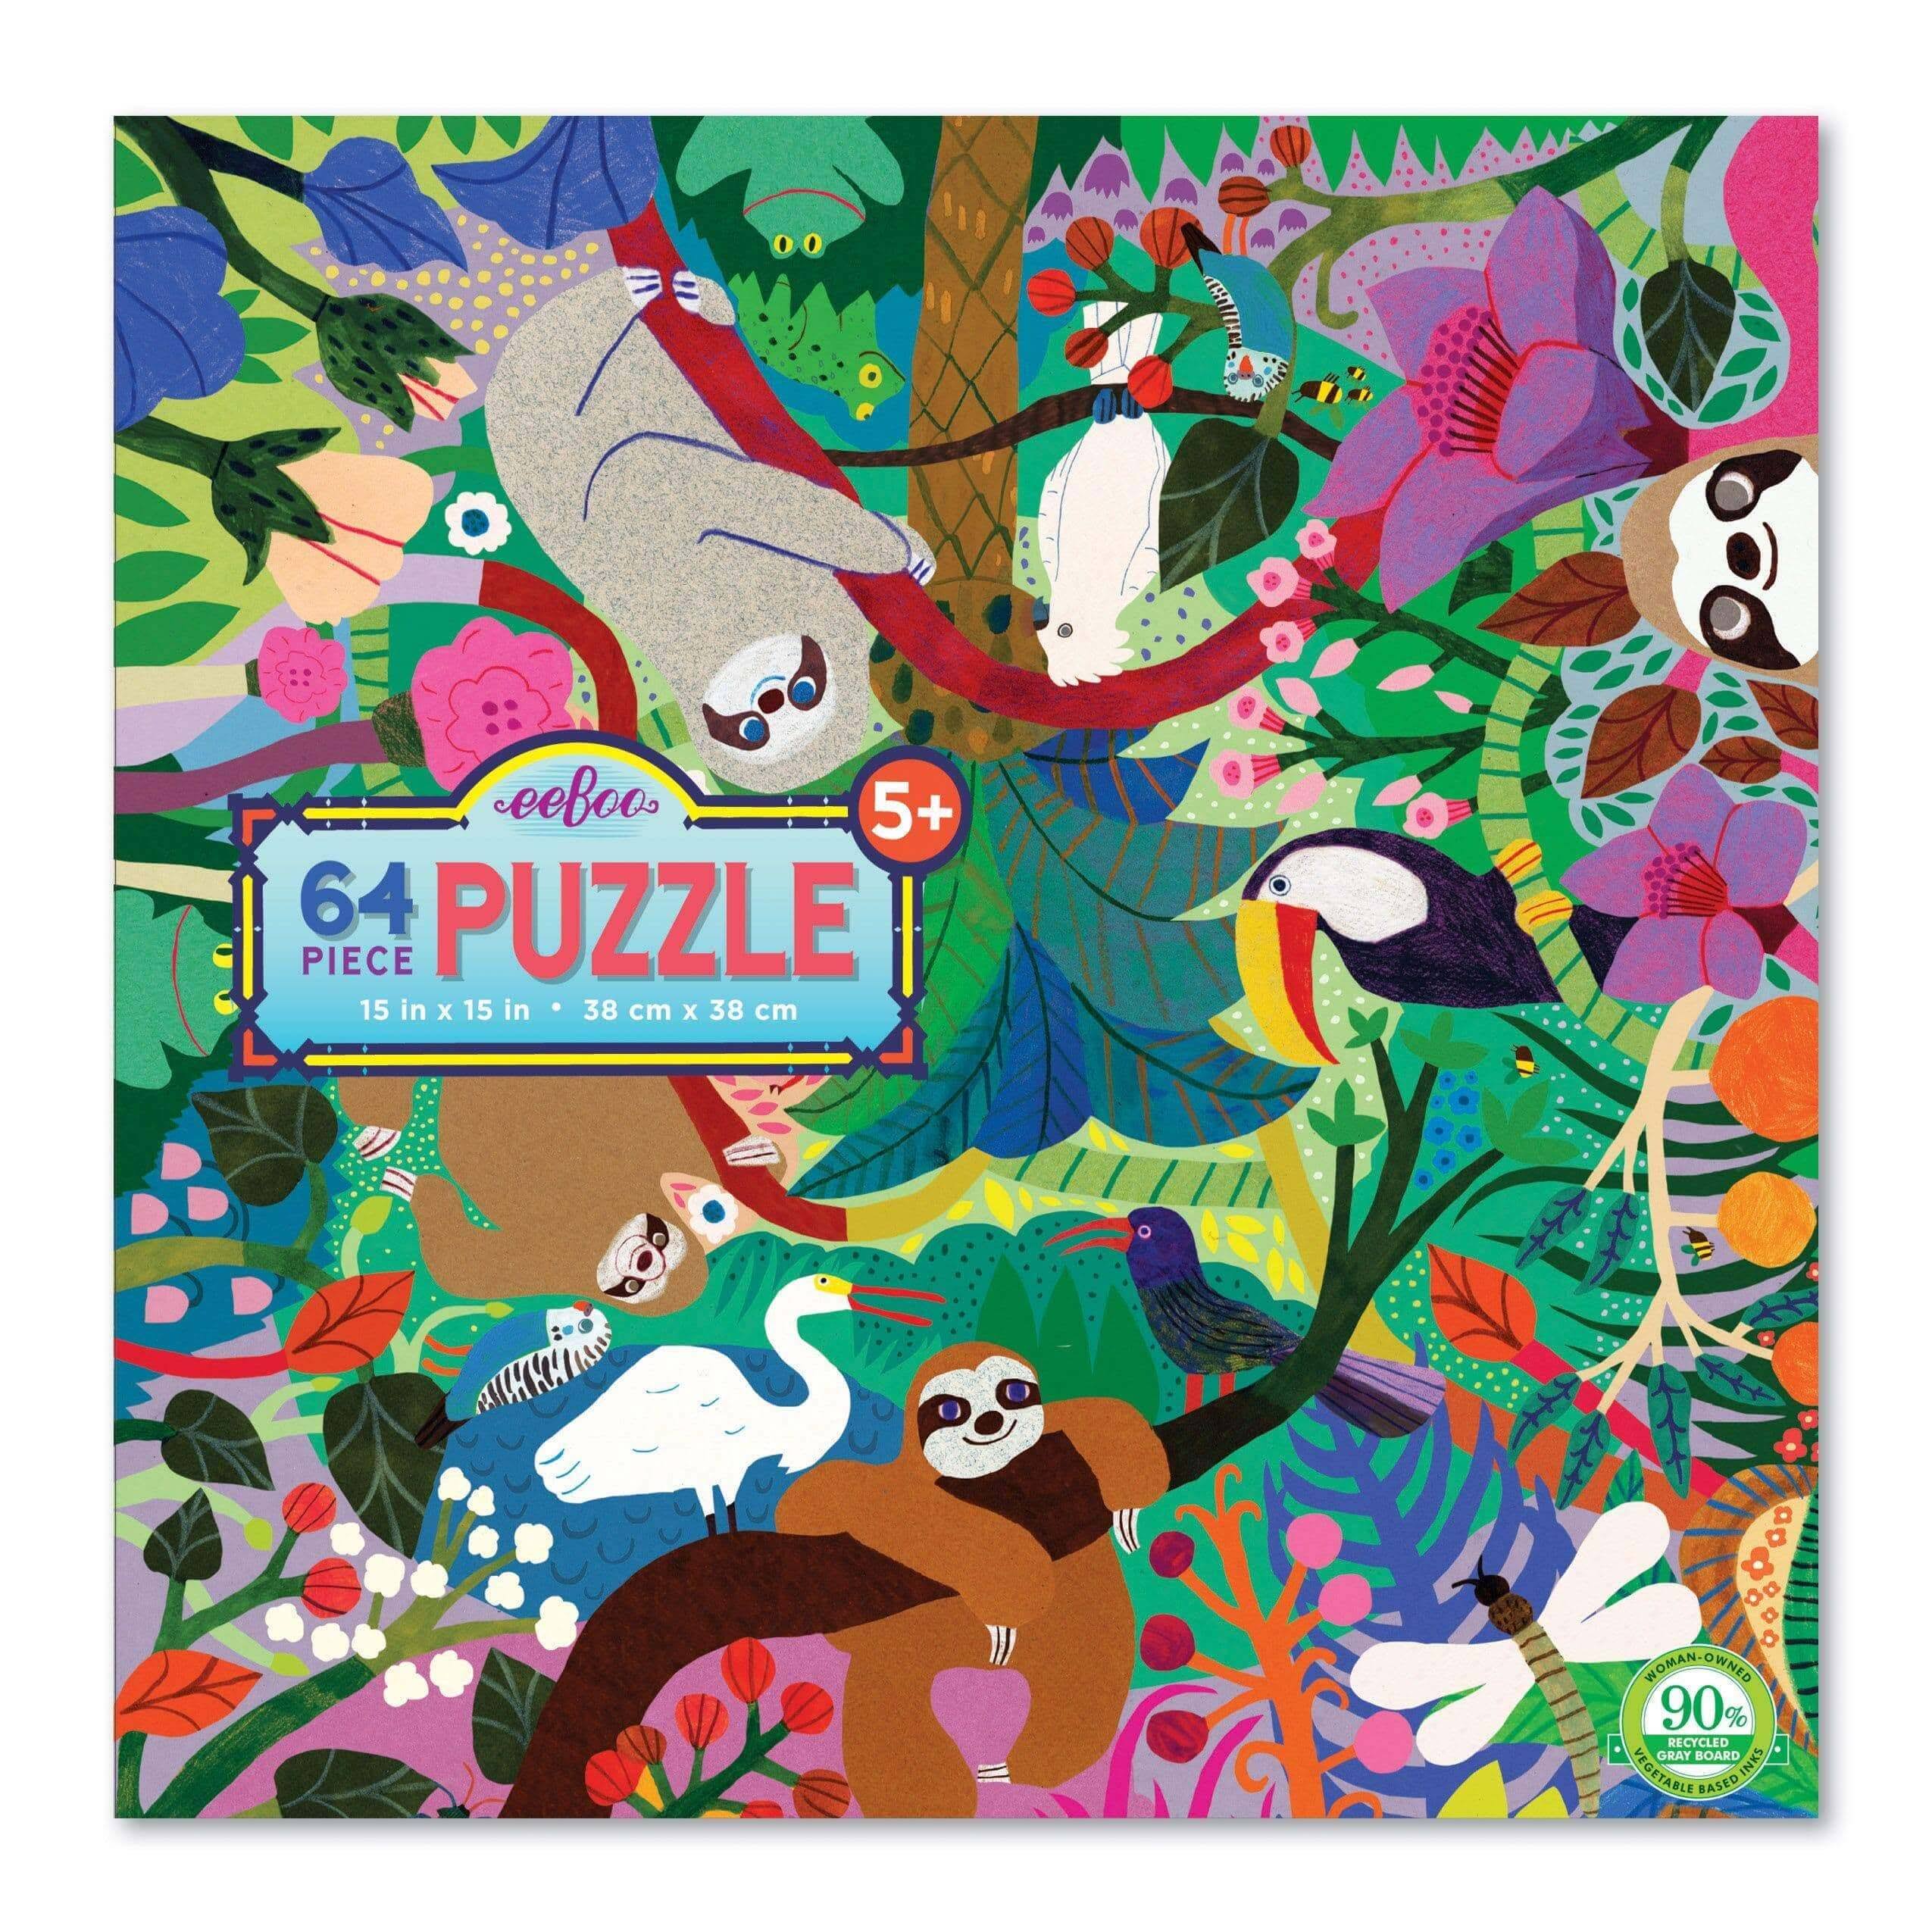 eeBoo 64 Piece Puzzle - Sloths at Play